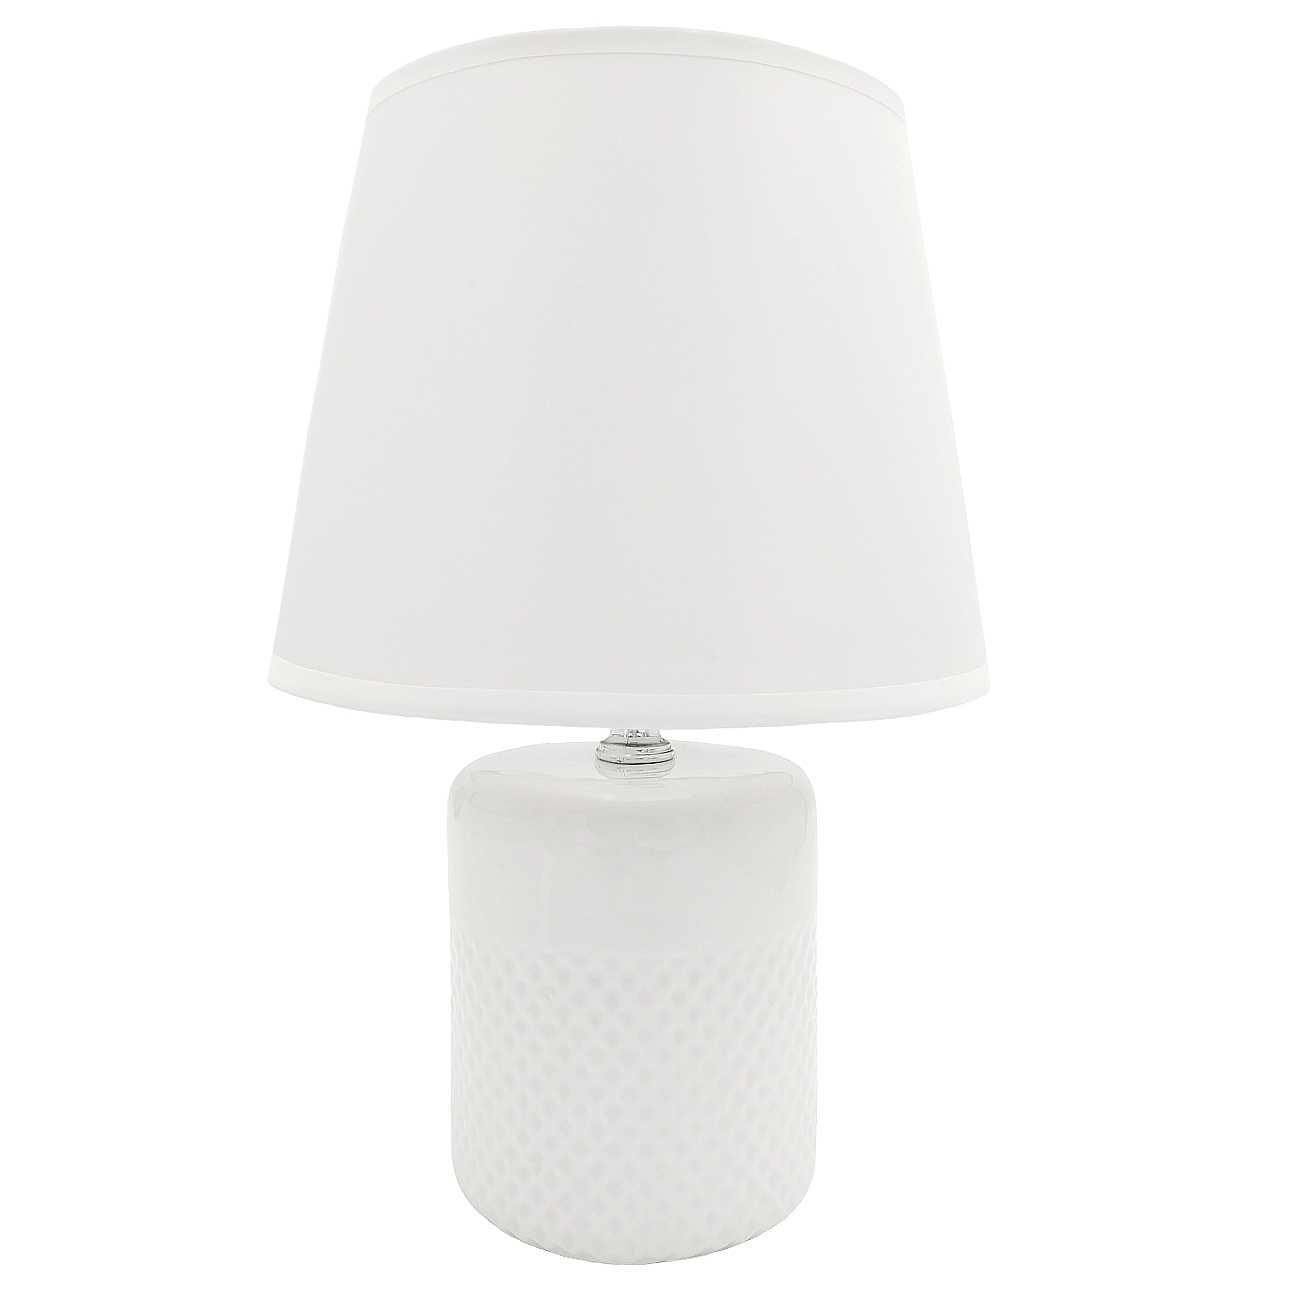 Lampa stołowa biała mała lampka nocna nowoczesna dekoracyjna